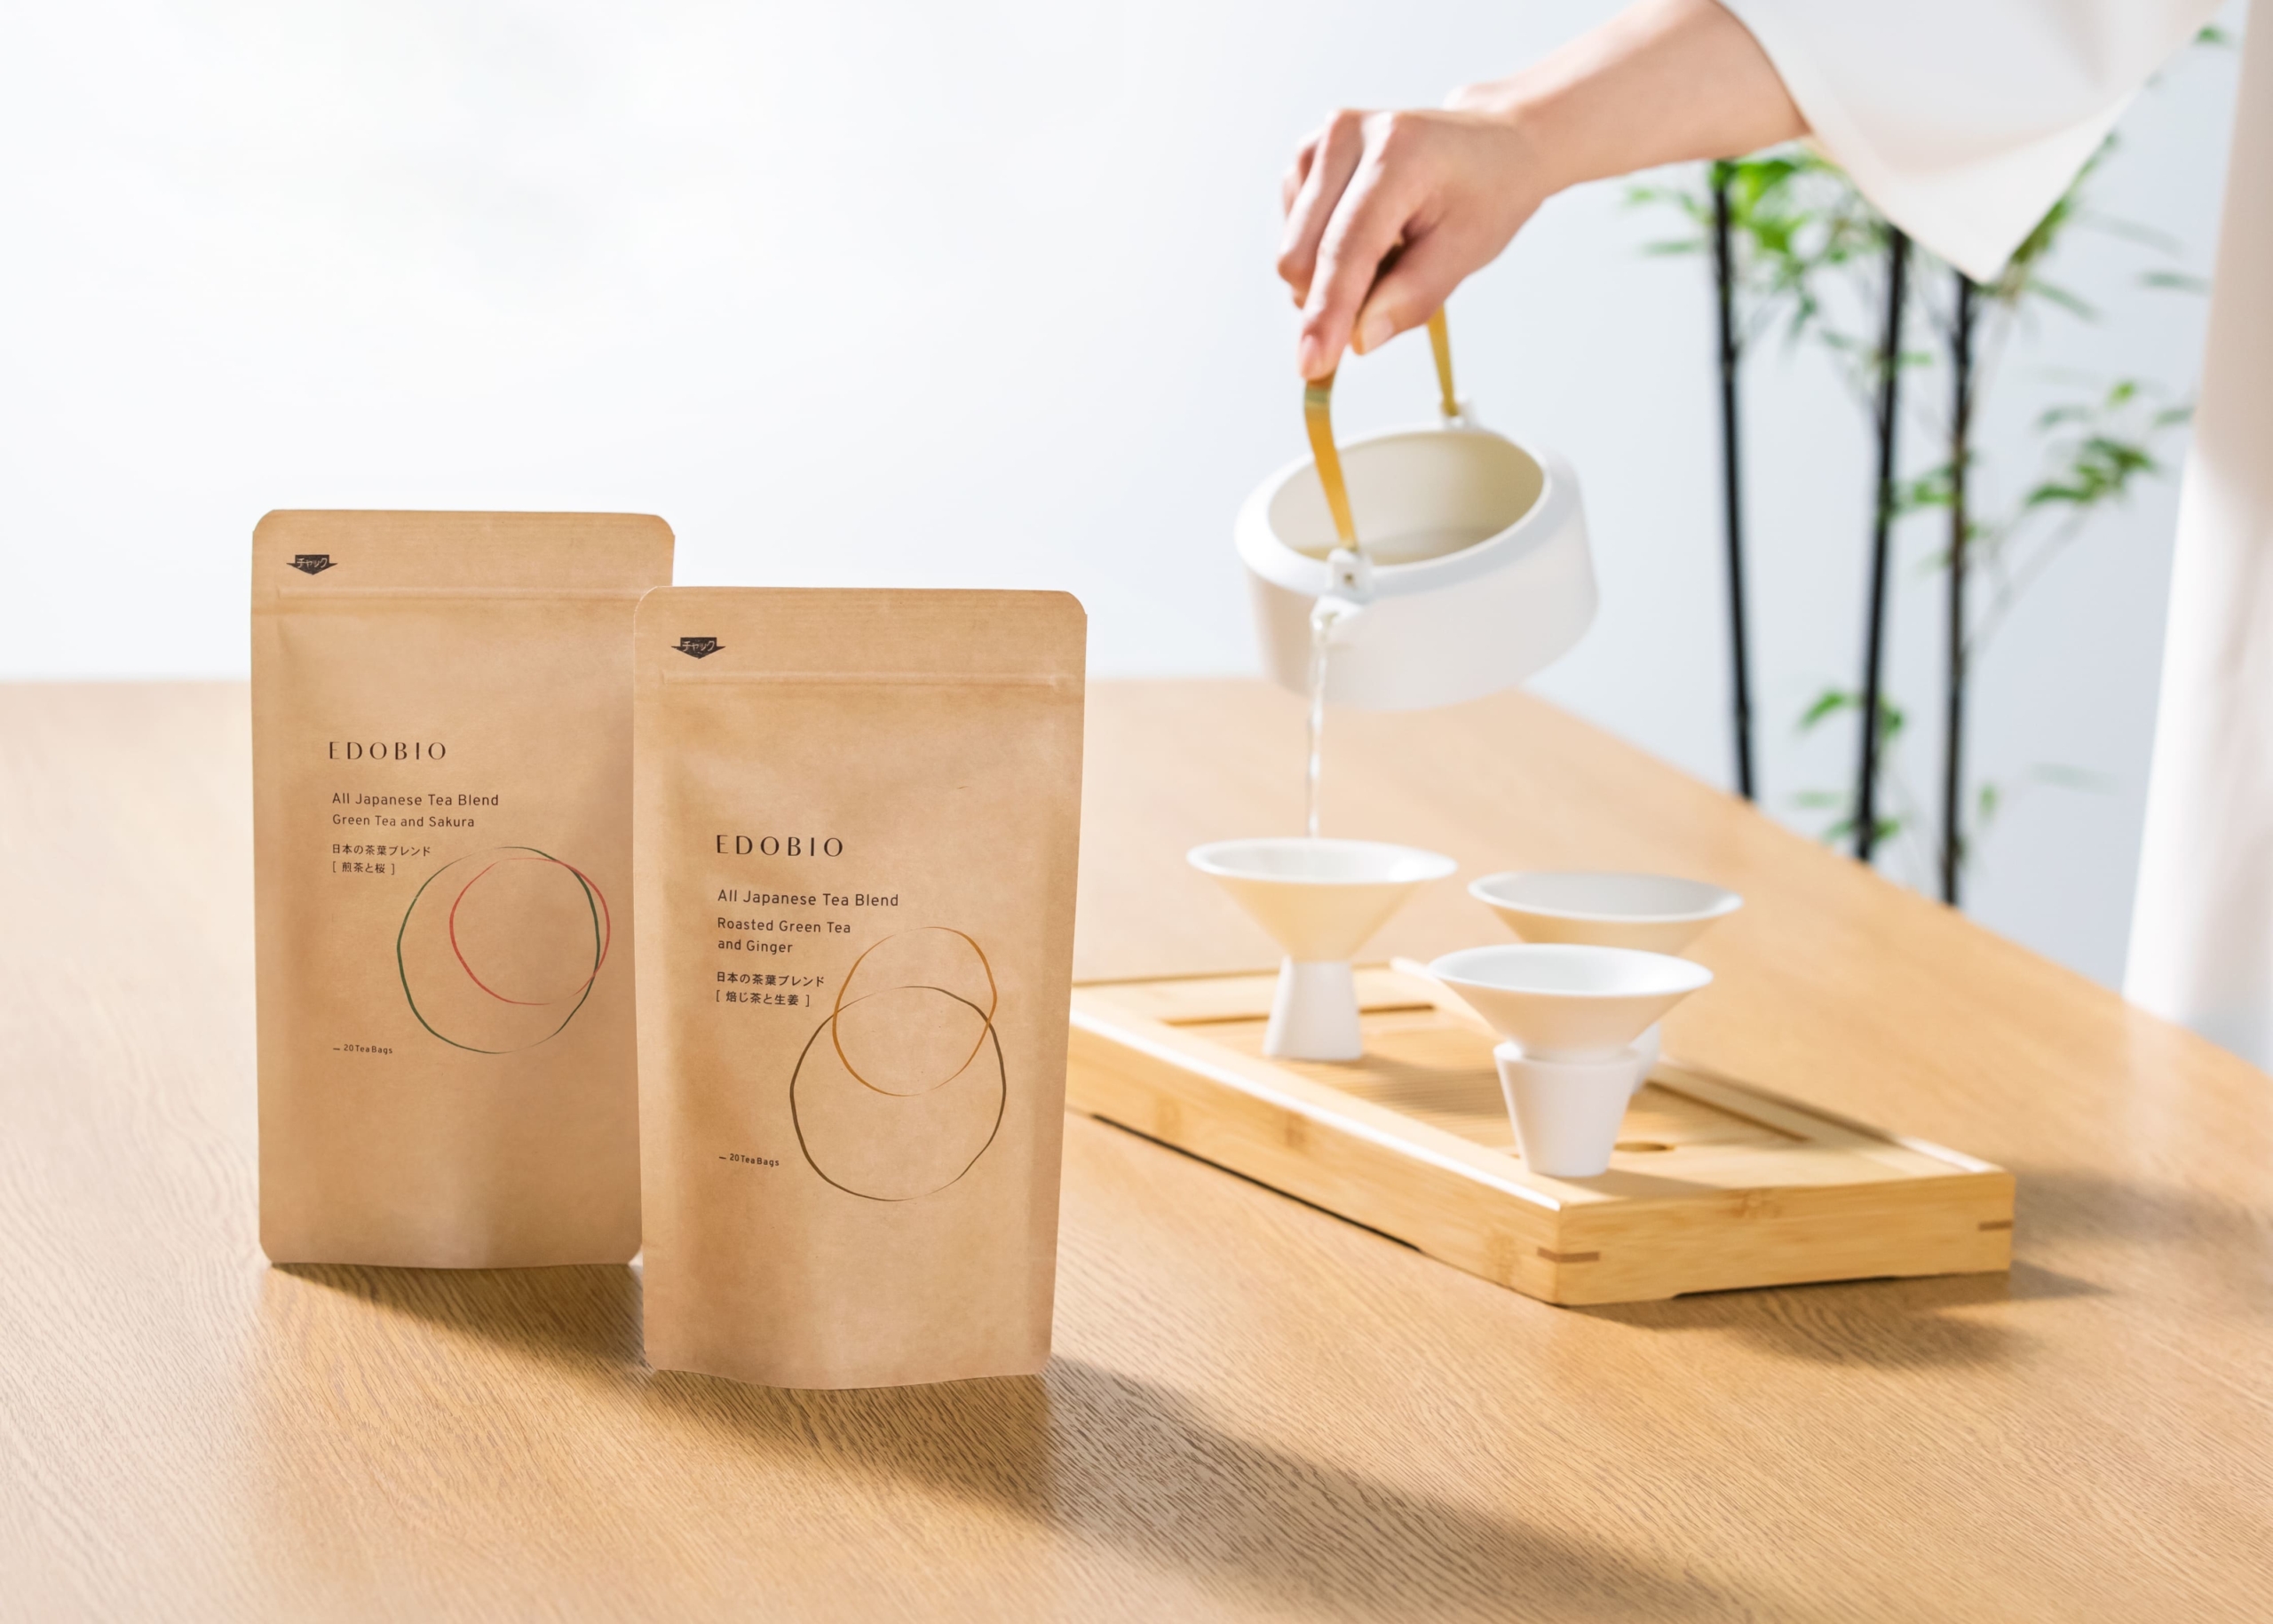 江戸時代のお茶文化を、新たな形で現代へ　
EDOBIO 日本の茶葉ブレンド 煎茶と桜、焙じ茶と生姜　
2022年6月30日(木)より新発売